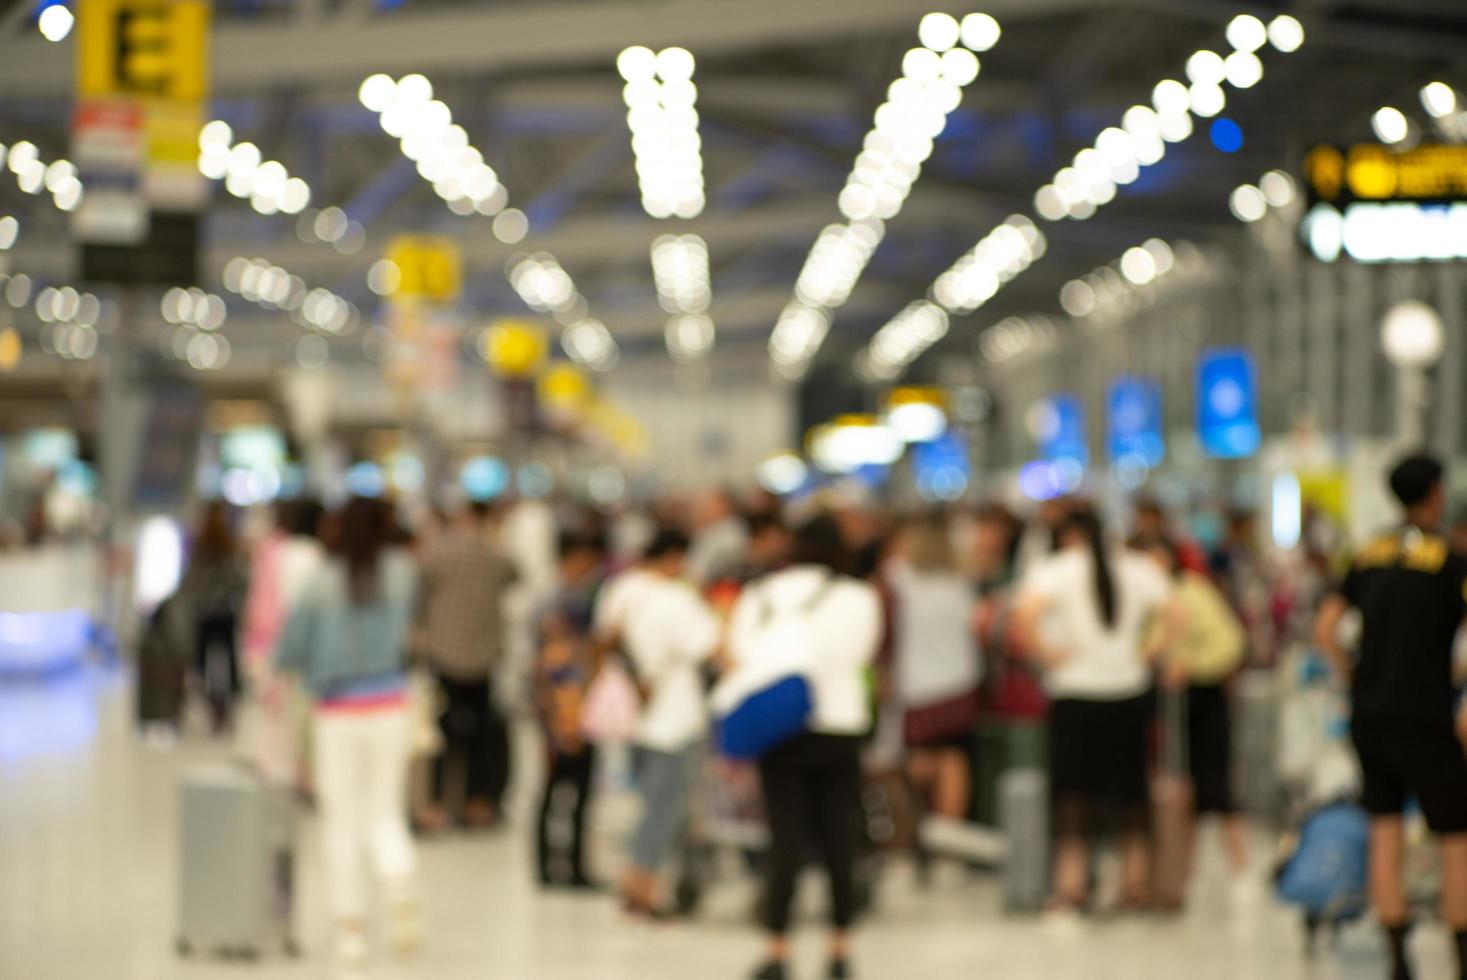 groupe de passagers défocalisés s'enregistrant au comptoir pour une carte d'embarquement à l'aéroport. image floue exprès photo